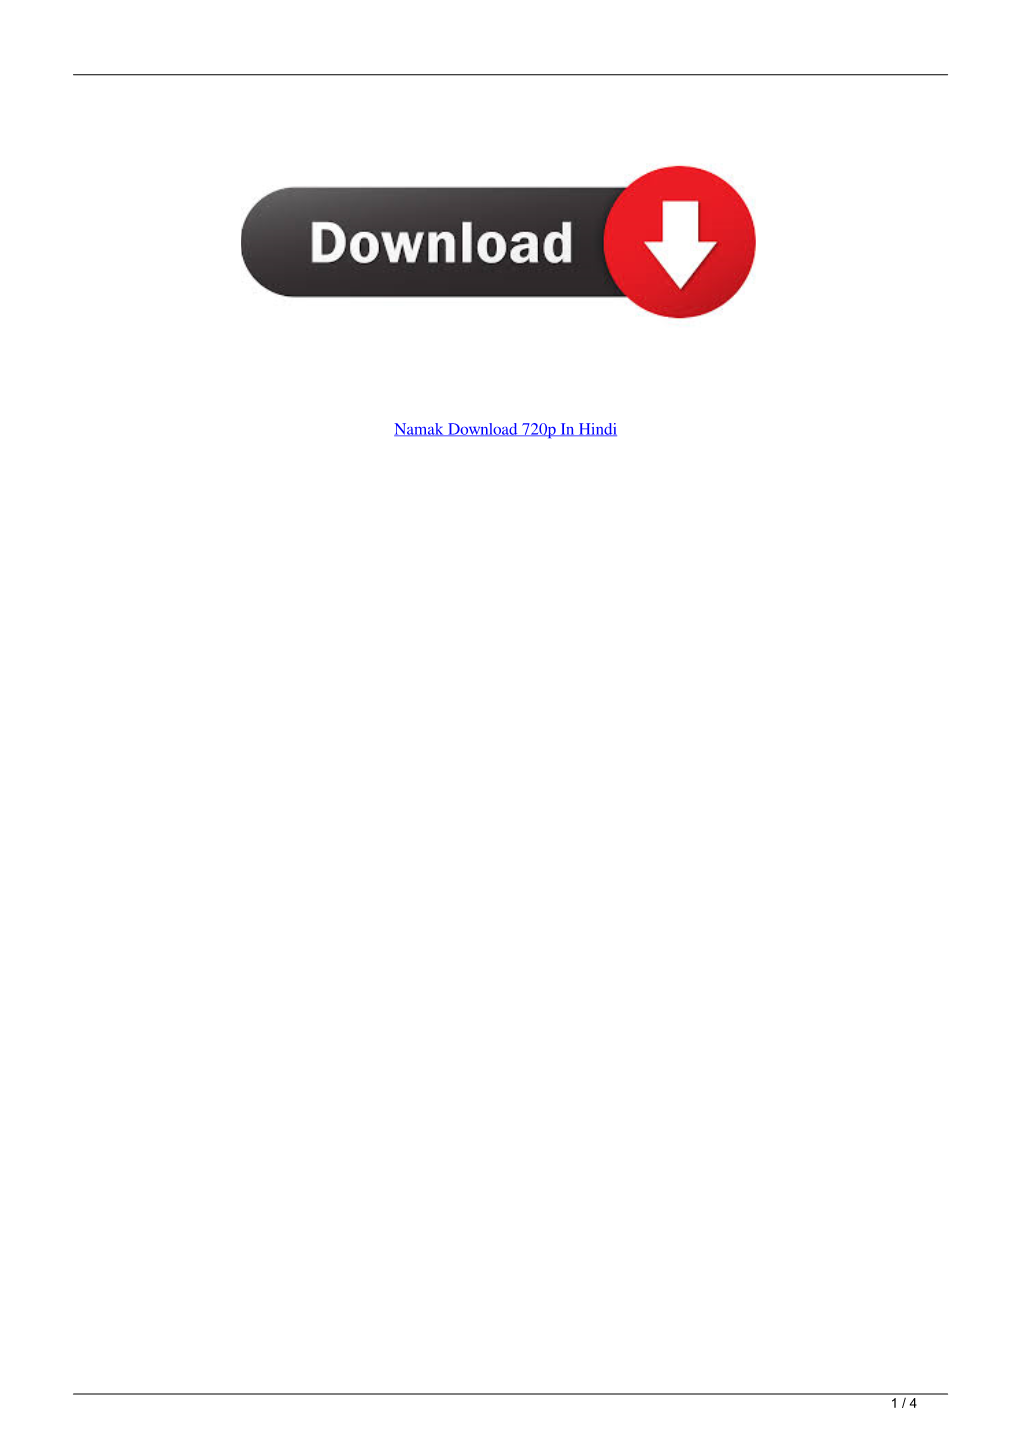 Namak Download 720P in Hindi